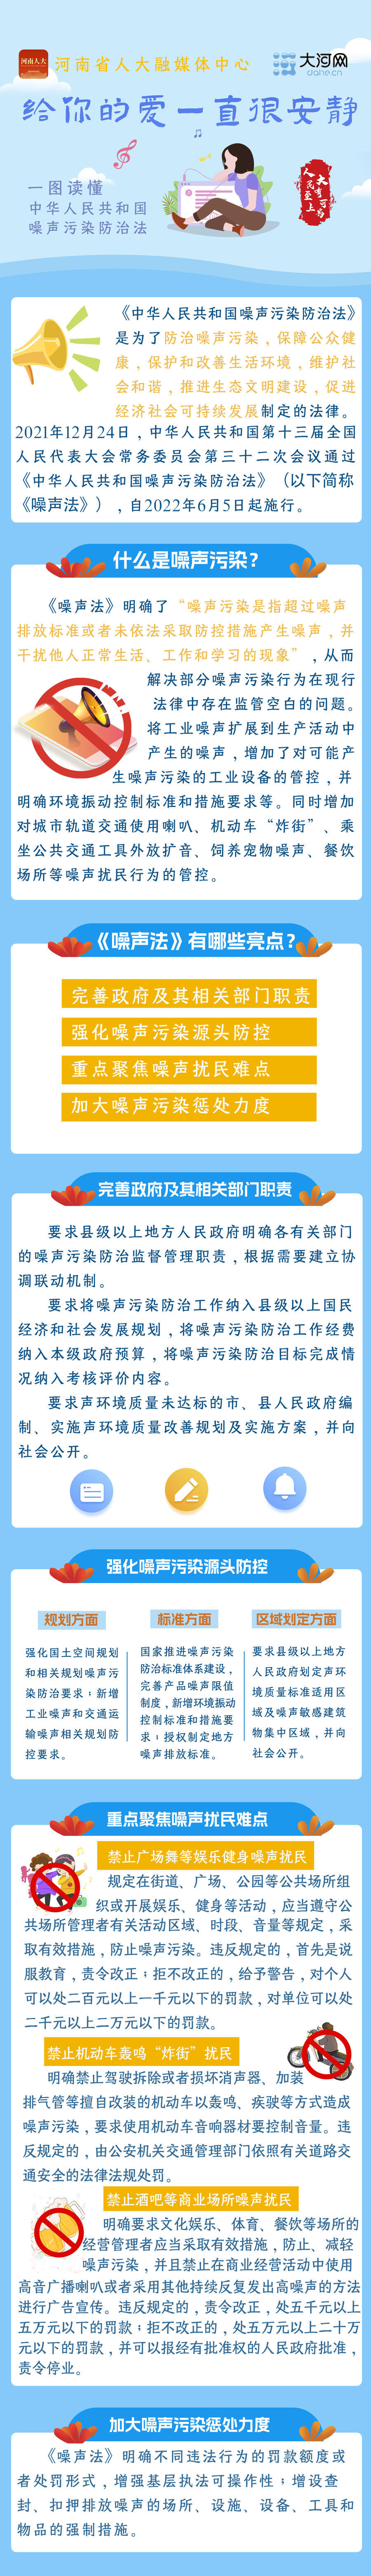 一图读懂丨给你的爱一直很安静 《中华人民共和国噪声污染防治法》实施一周年